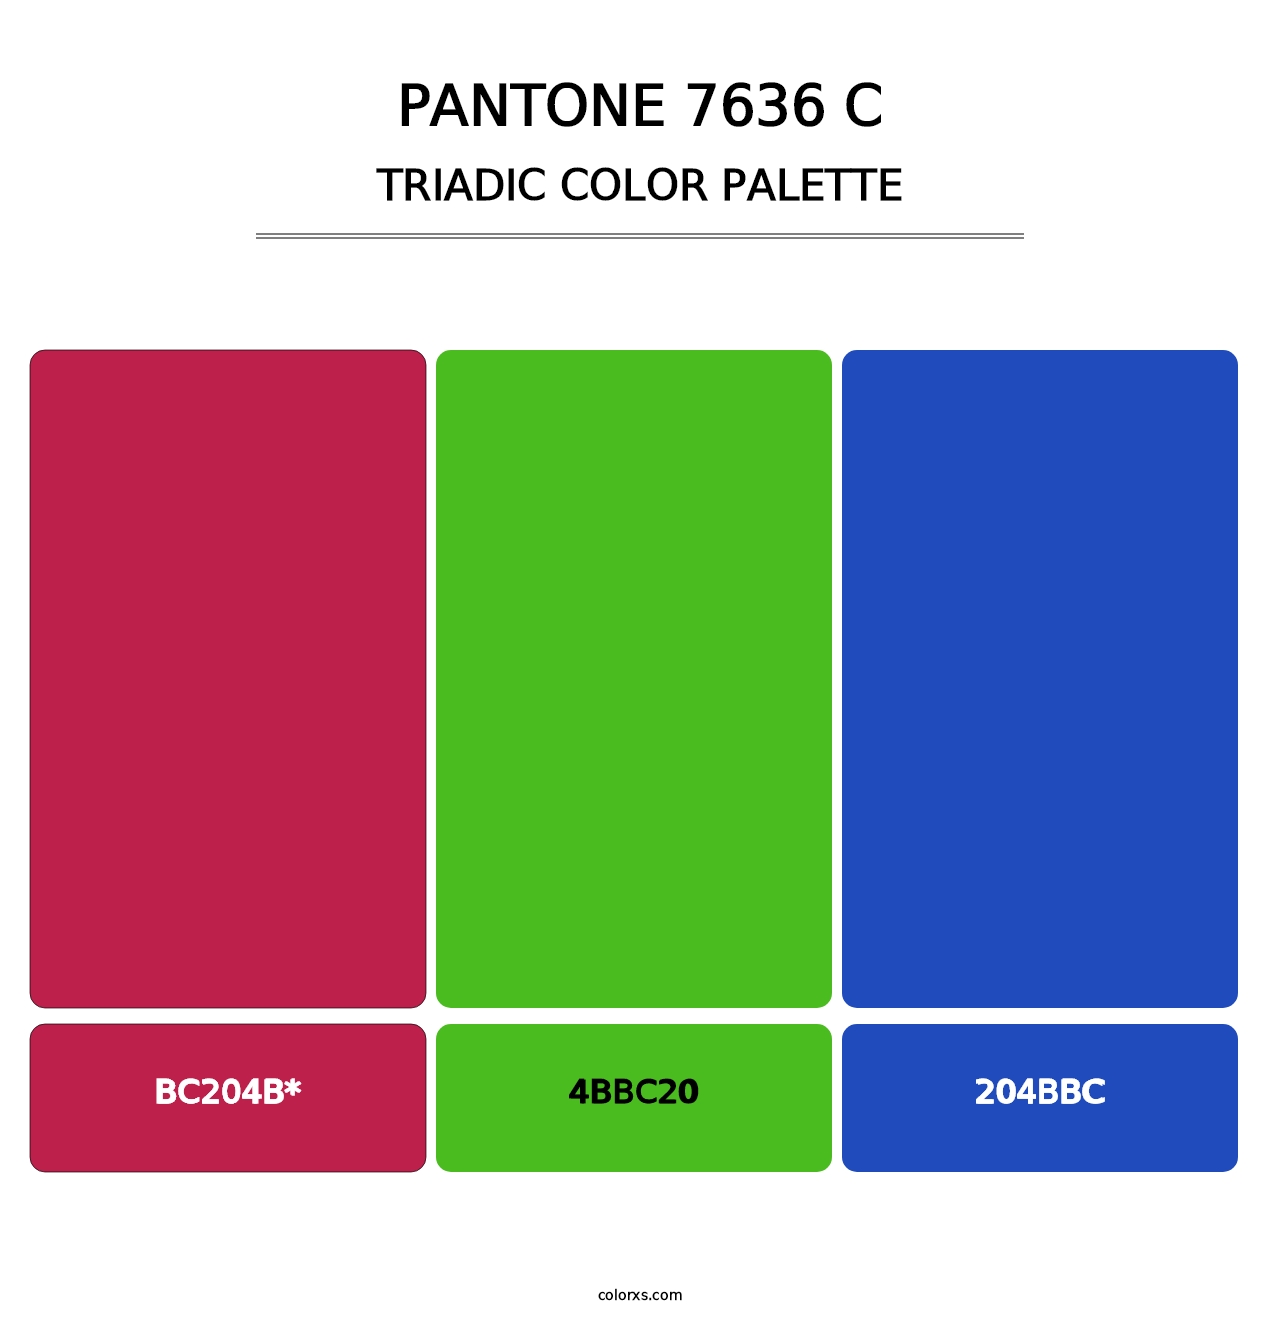 PANTONE 7636 C - Triadic Color Palette